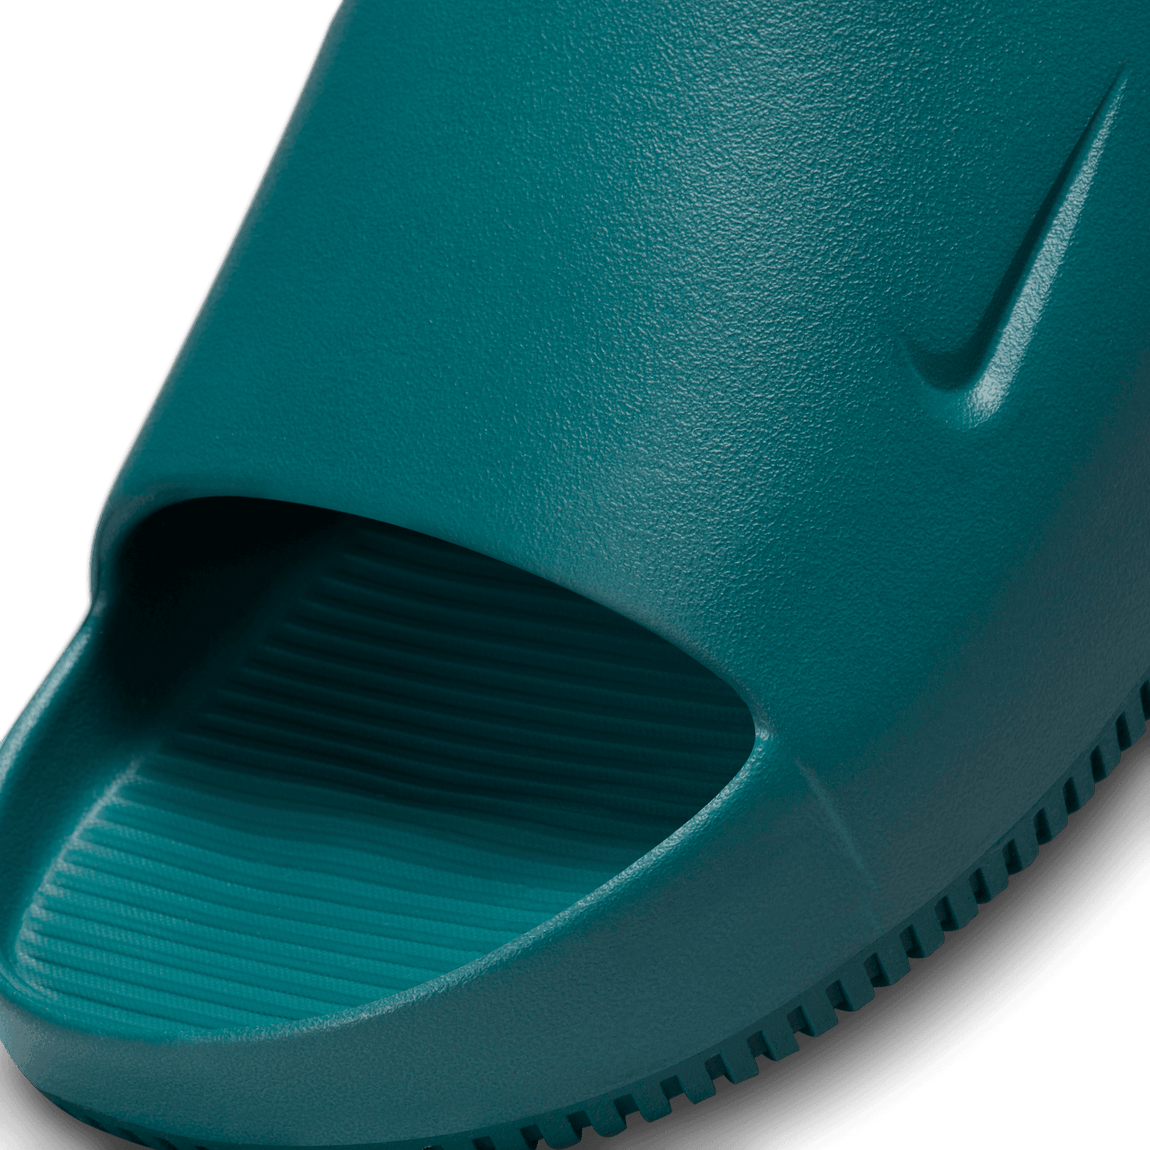 Nike Calm Slide ( Geode Teal ) - Nike Calm Slide ( Geode Teal ) - 